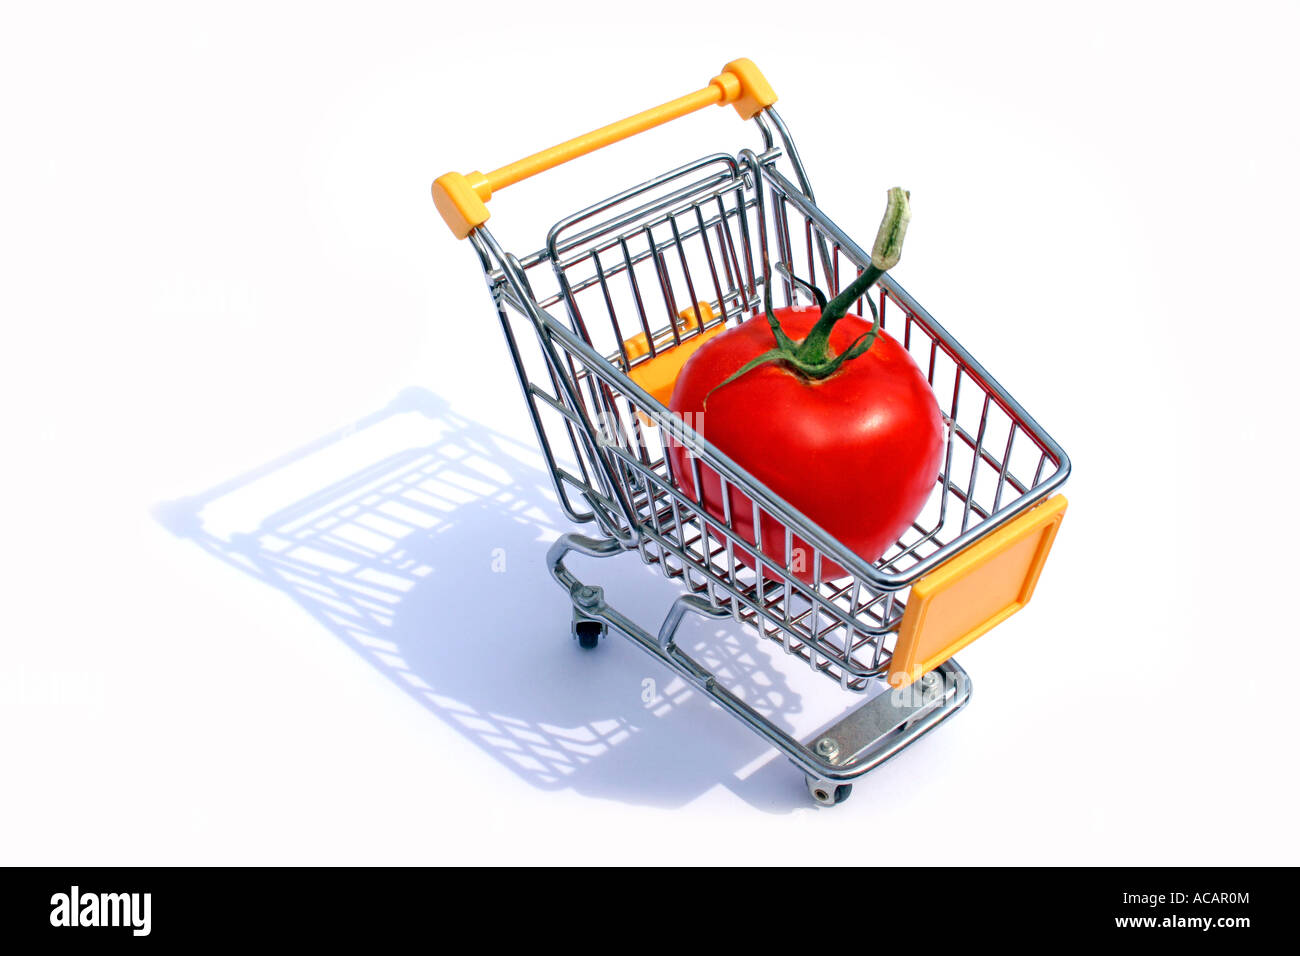 Tomate gigante en un carrito de la compra Foto de stock